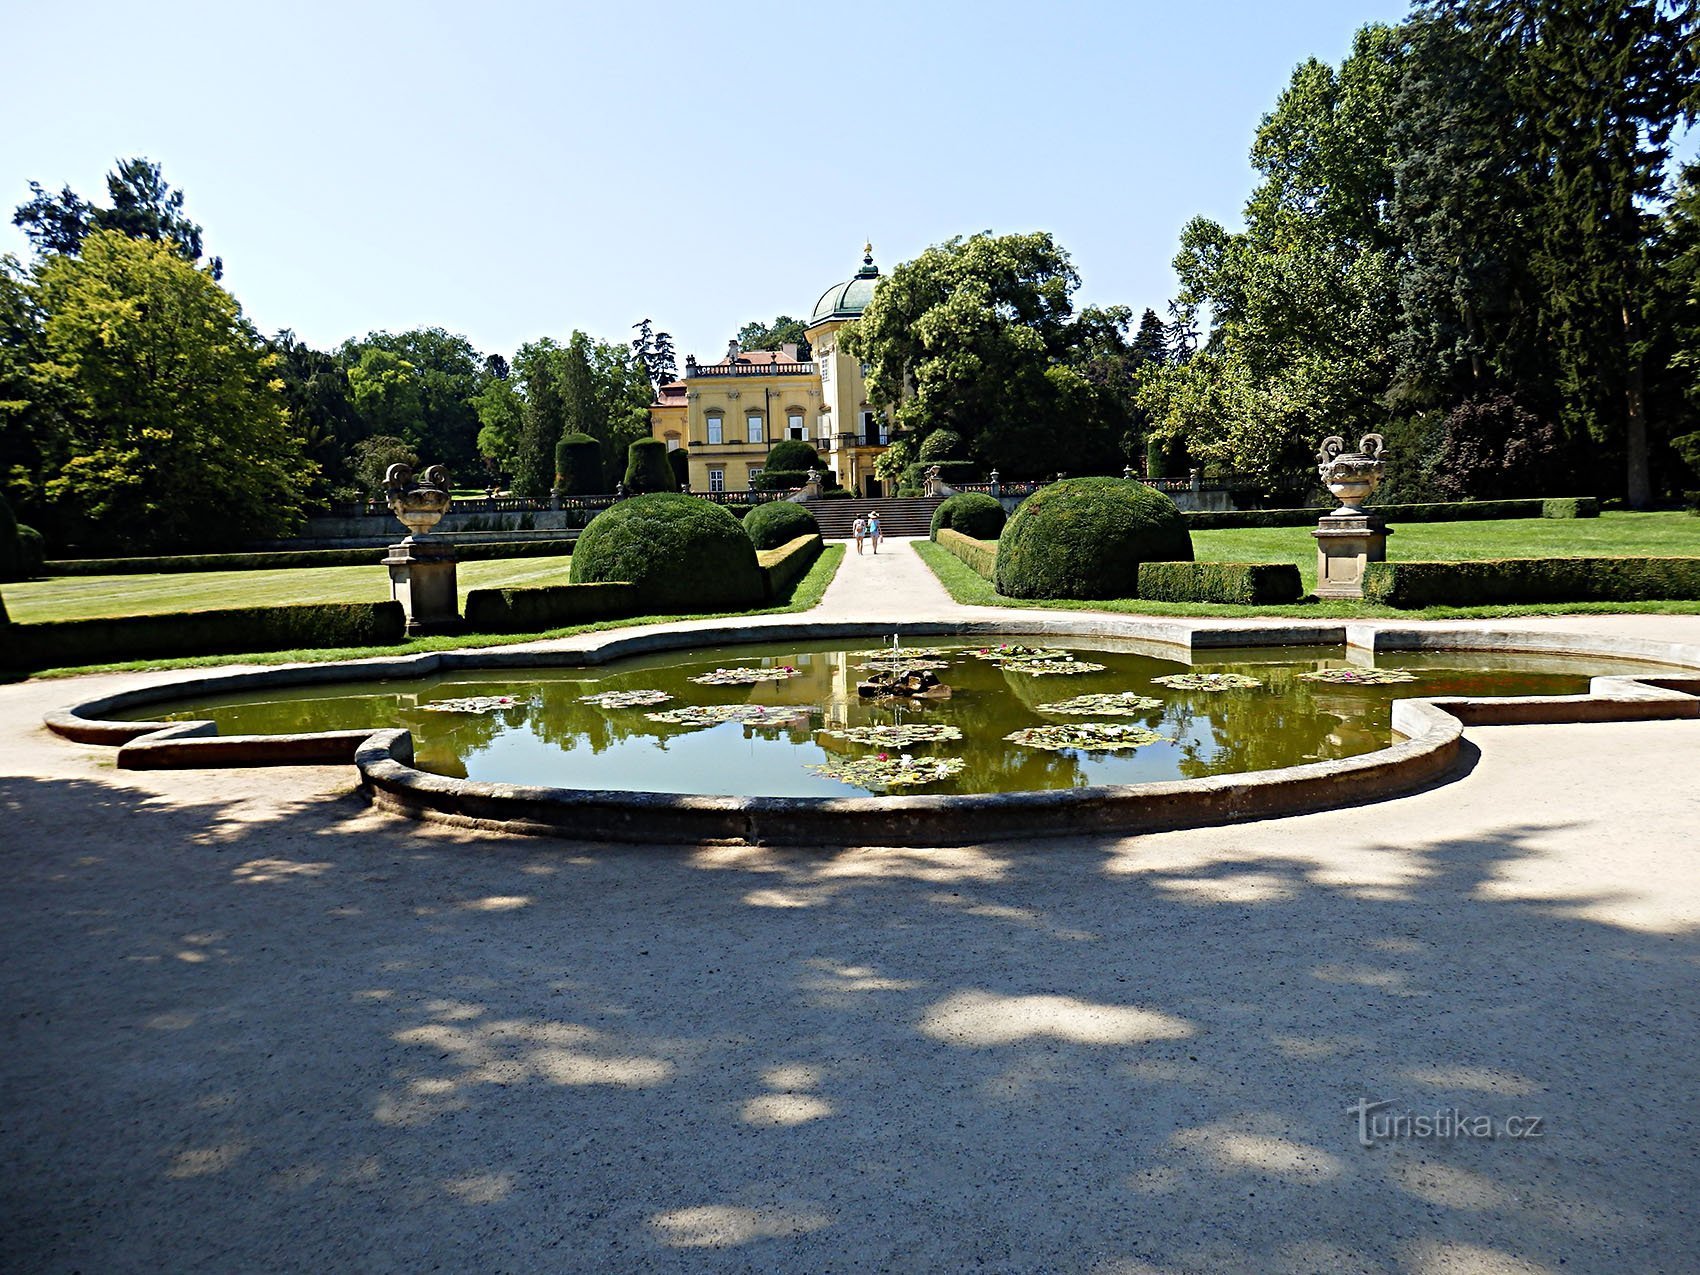 l'area del parco e del giardino del castello a Buchlovice è una delle più importanti e più belle